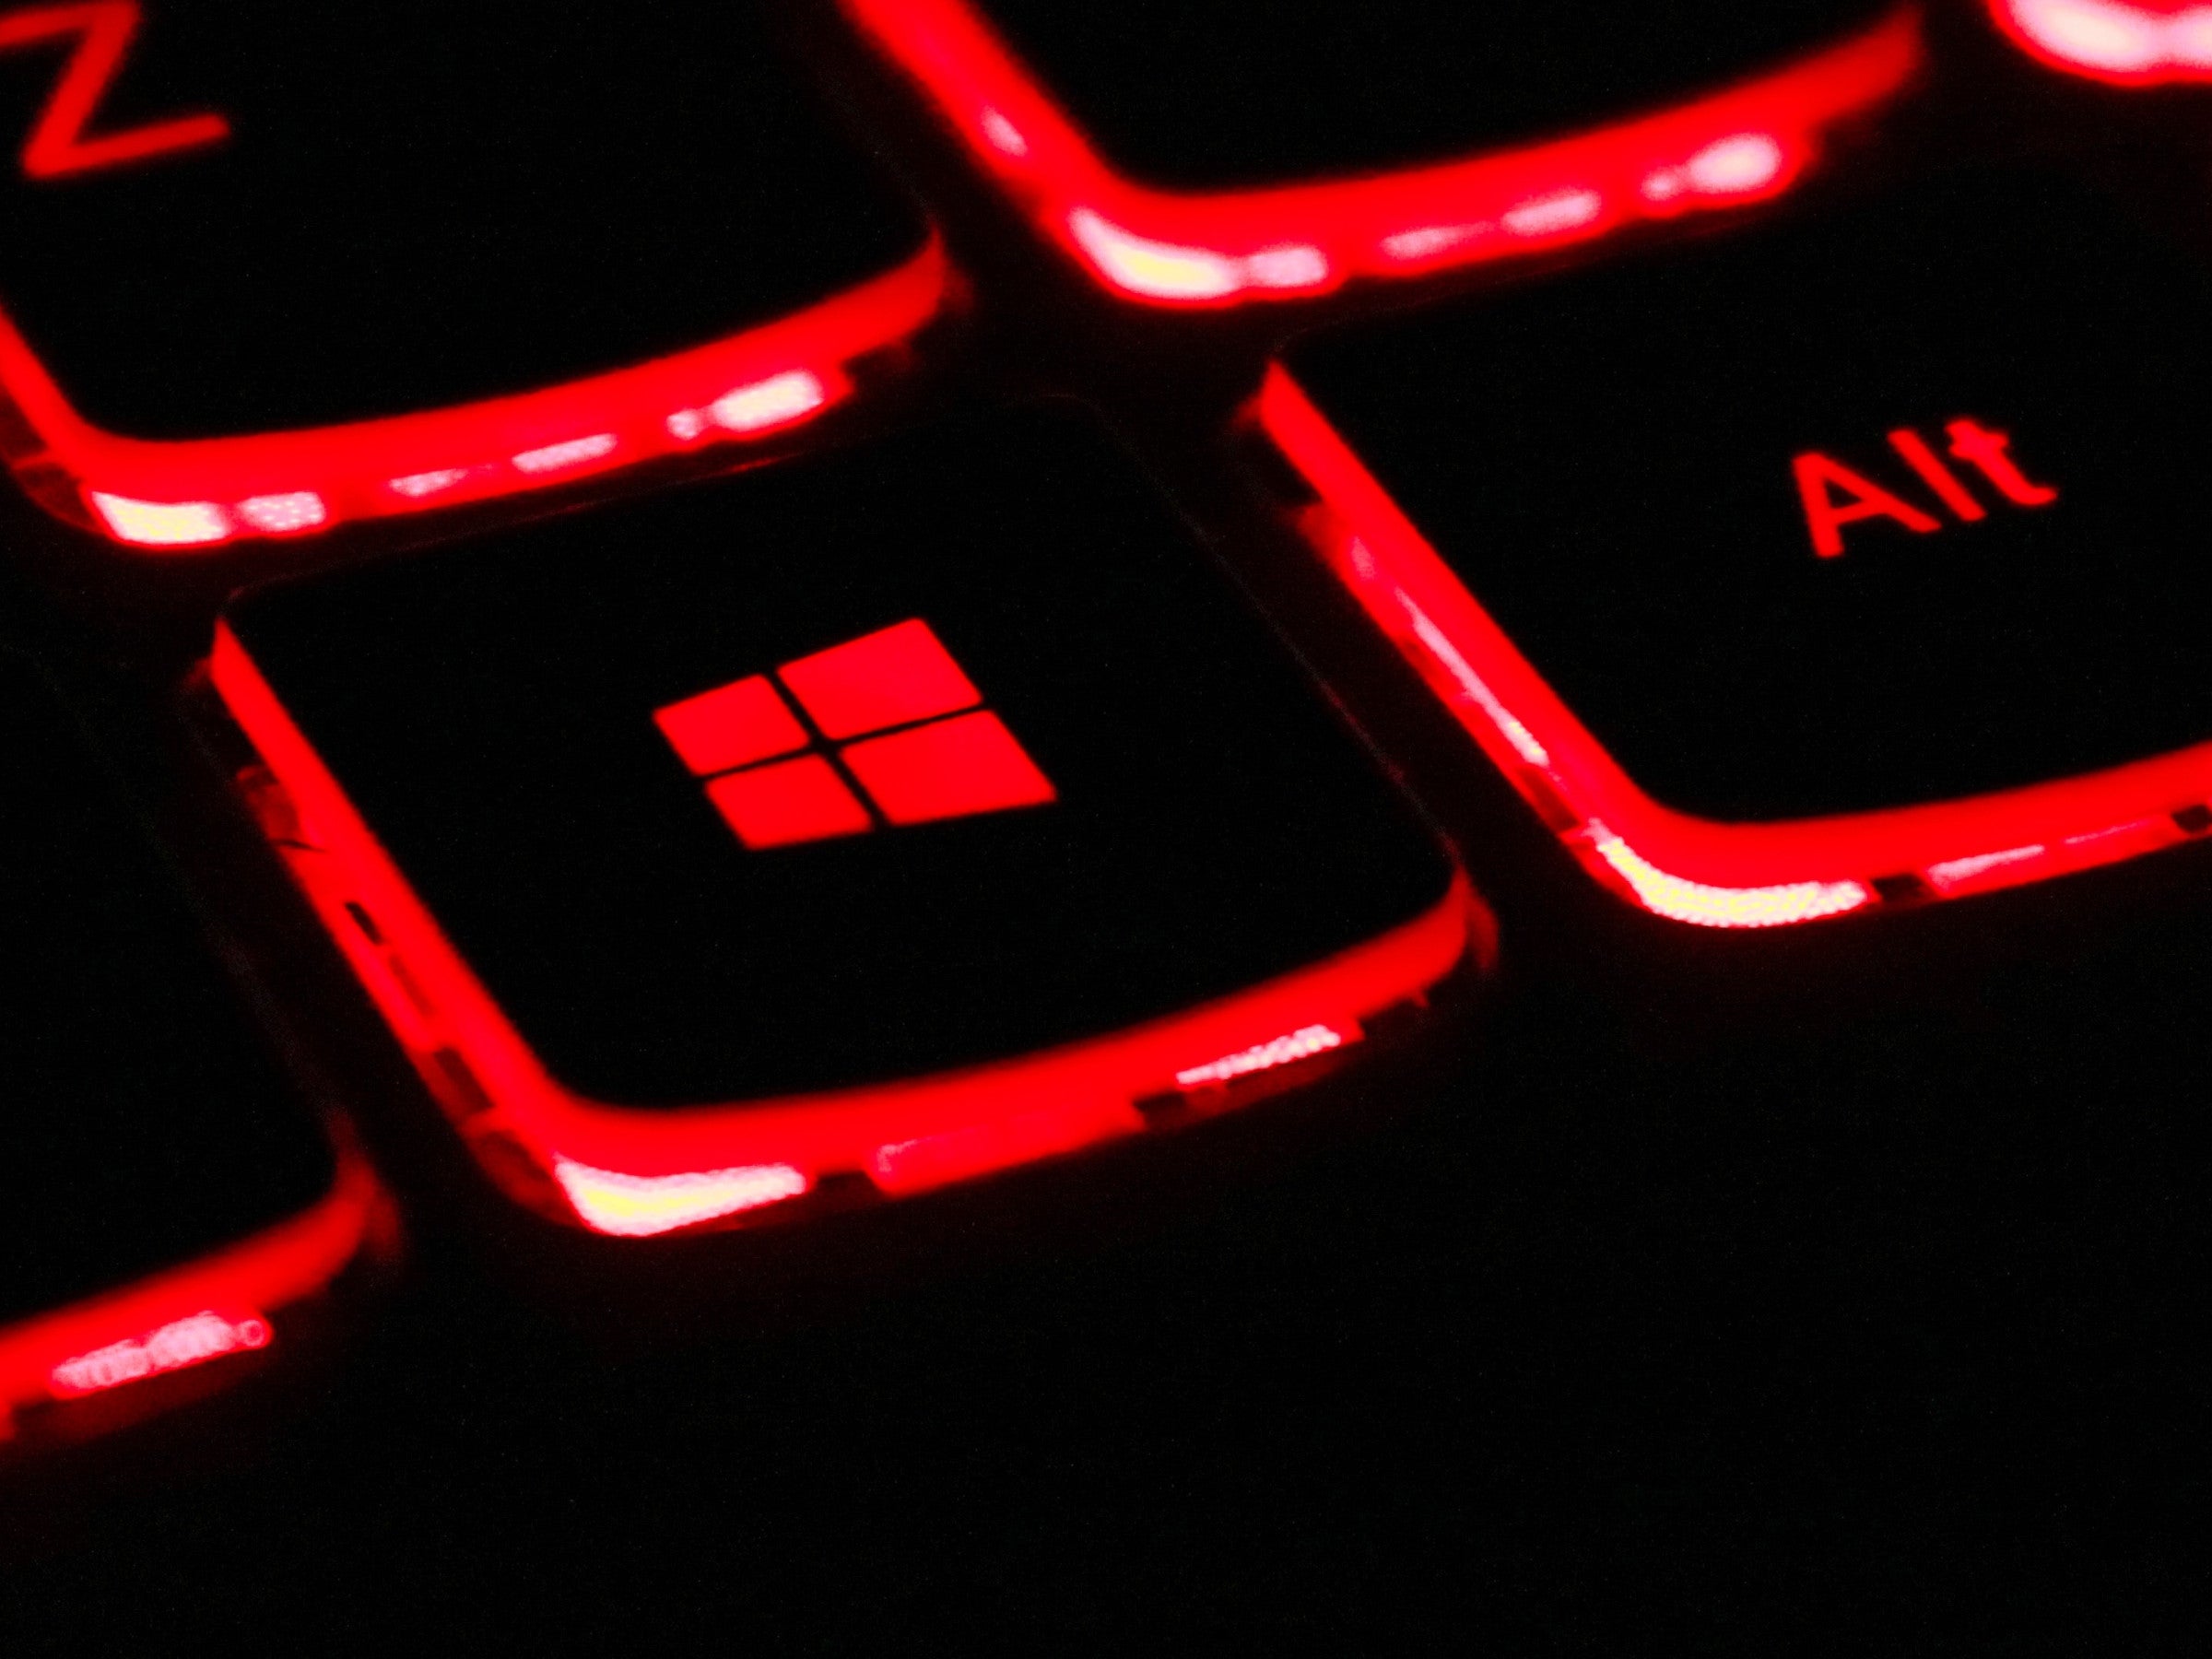 #Windows vor dem Aus: Microsoft schaltet beliebtes Betriebssystem ab